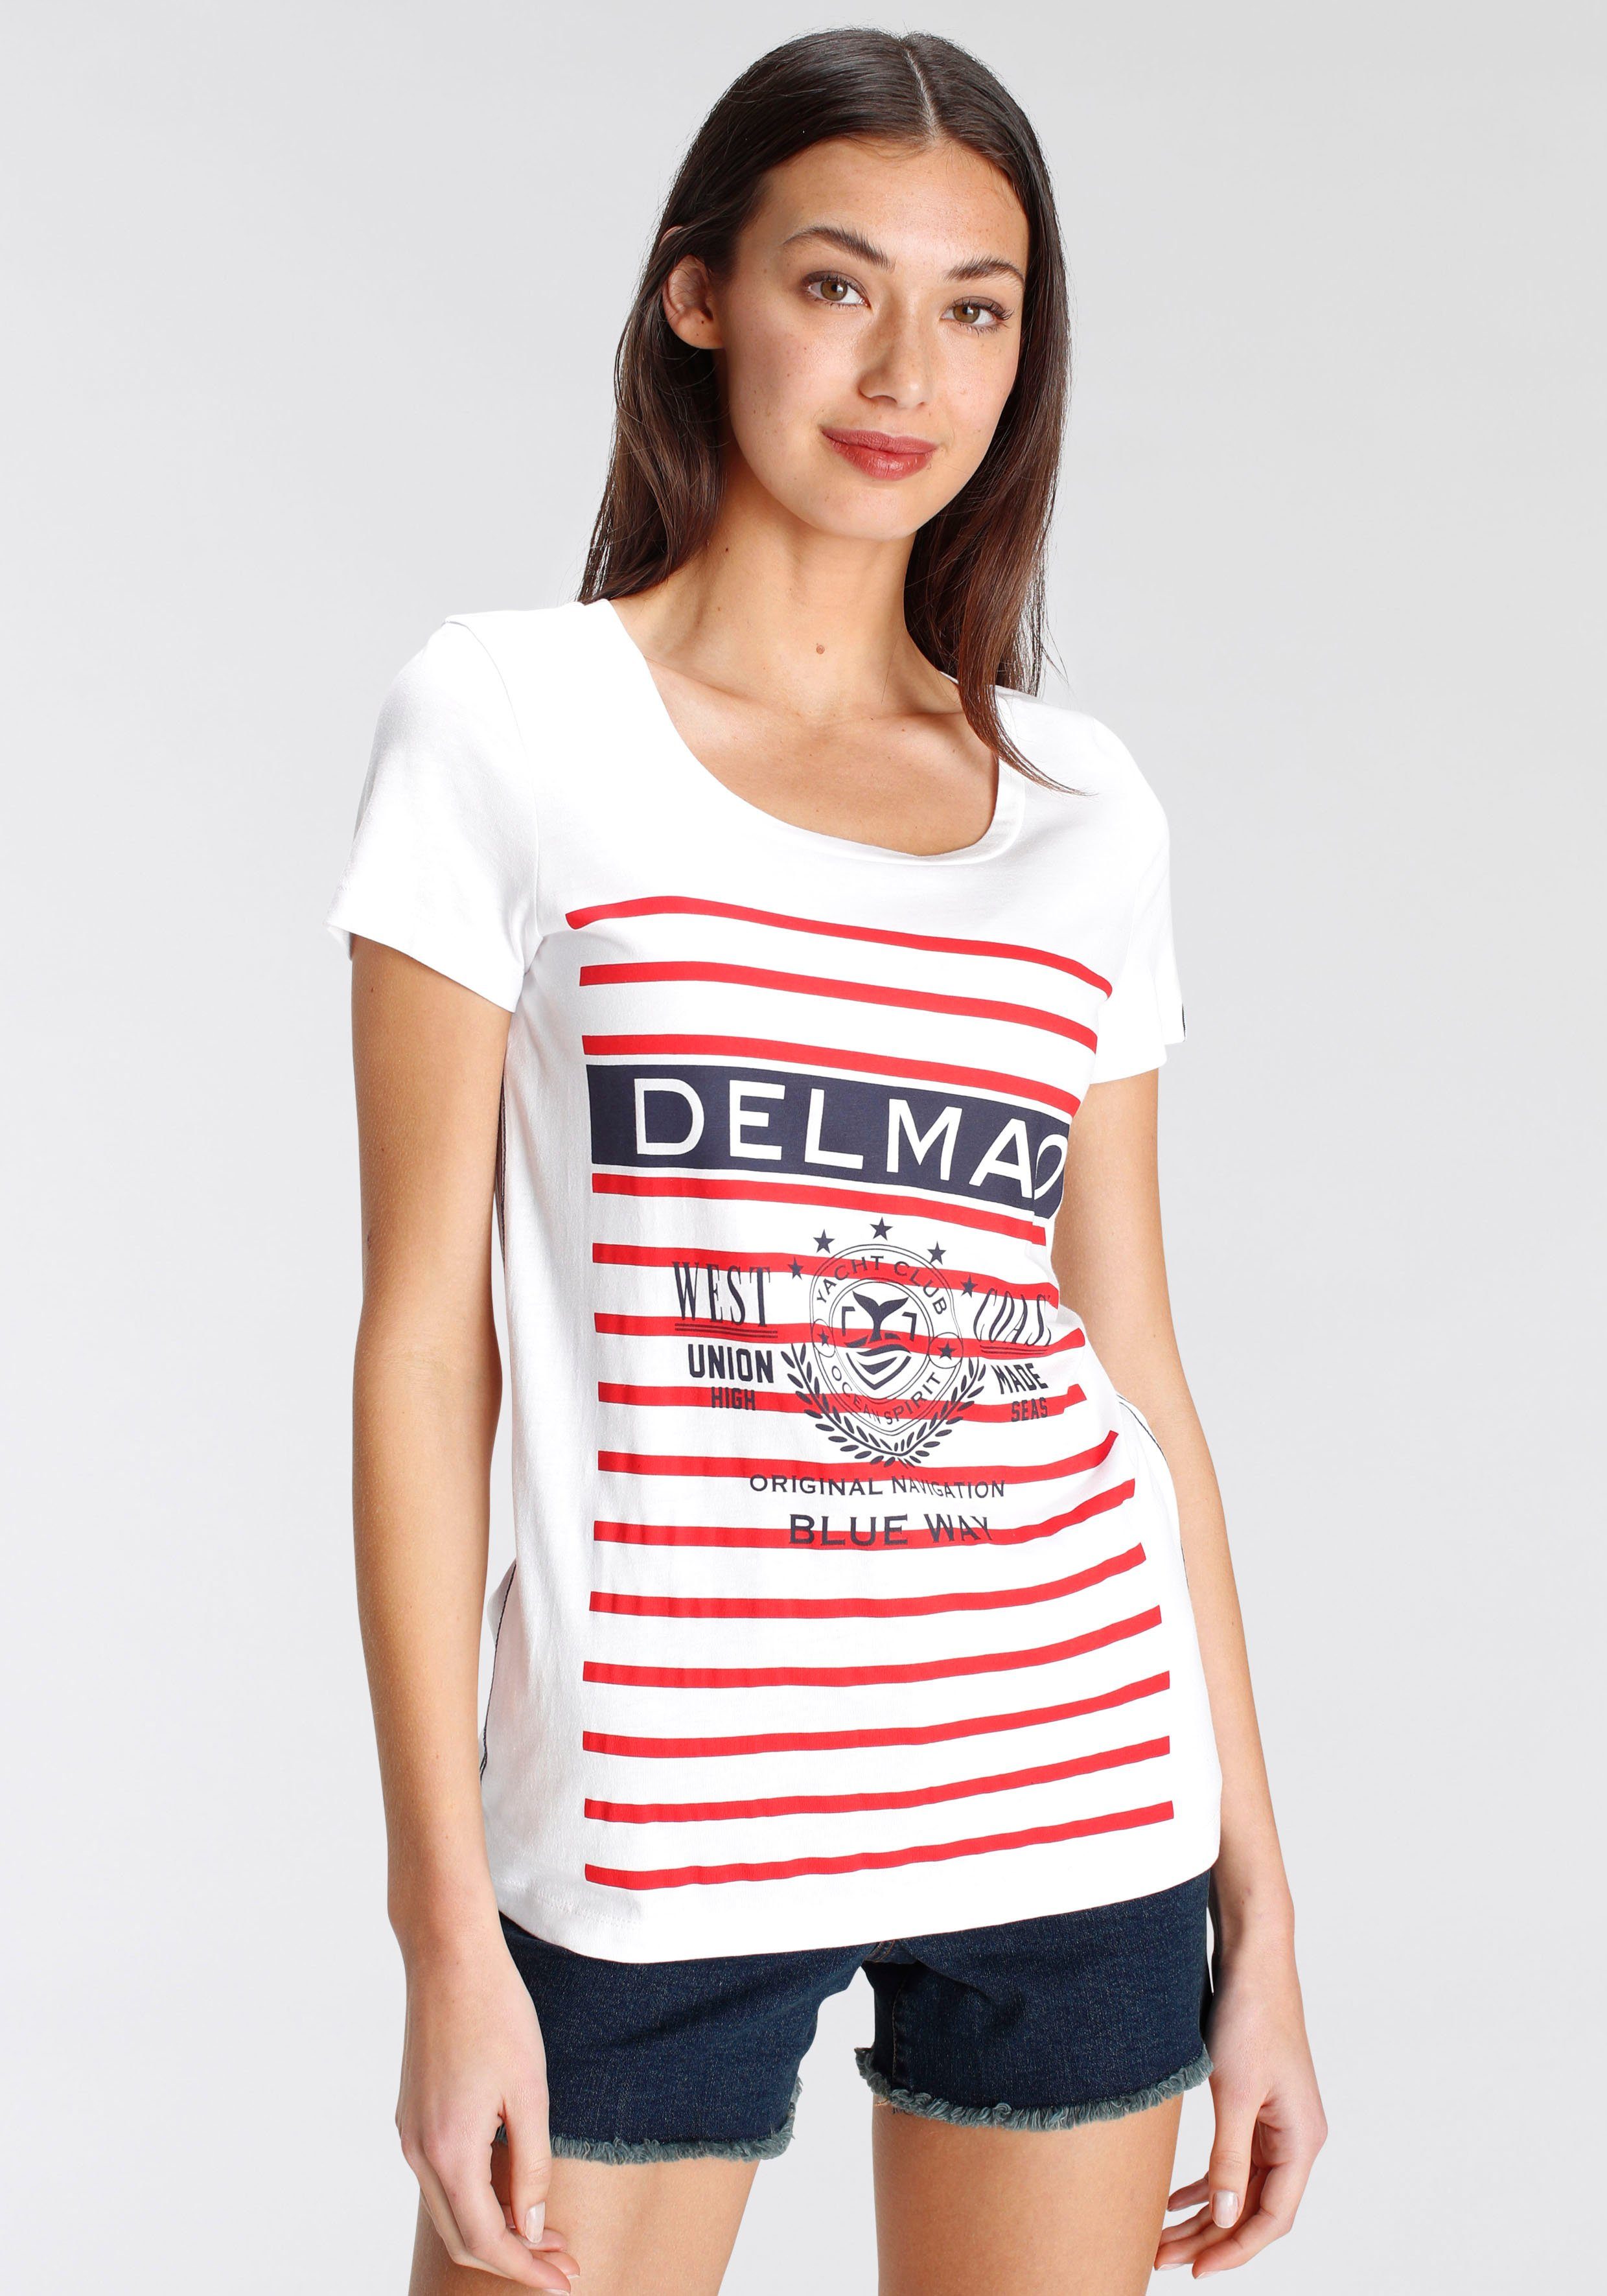 DELMAO Print-Shirt mit sportivem großen NEUE - Marken-Logodruck MARKE